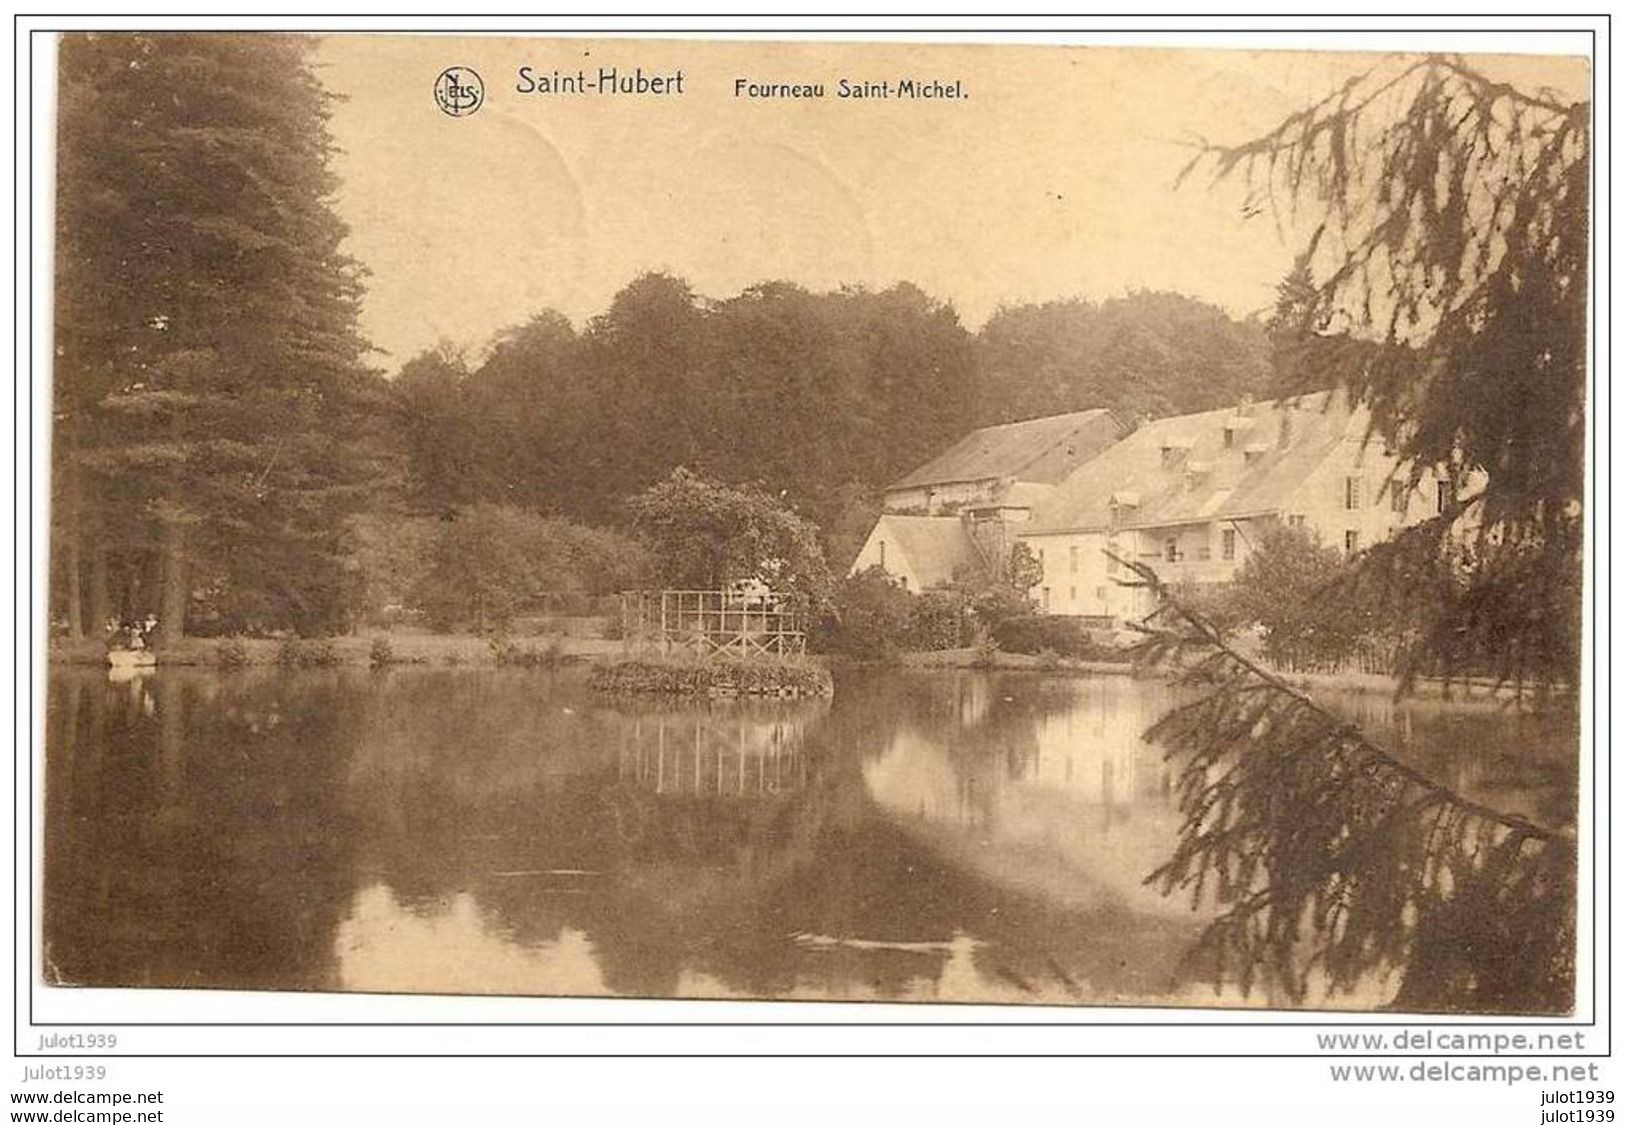 BLIER . SAINT - HUBERT ..-- Fourneau St - Michel ..-- 1921 BLIER ( Melle Rosalie GRANDJEAN  Au Château ) .  Voir Verso . - Erezee